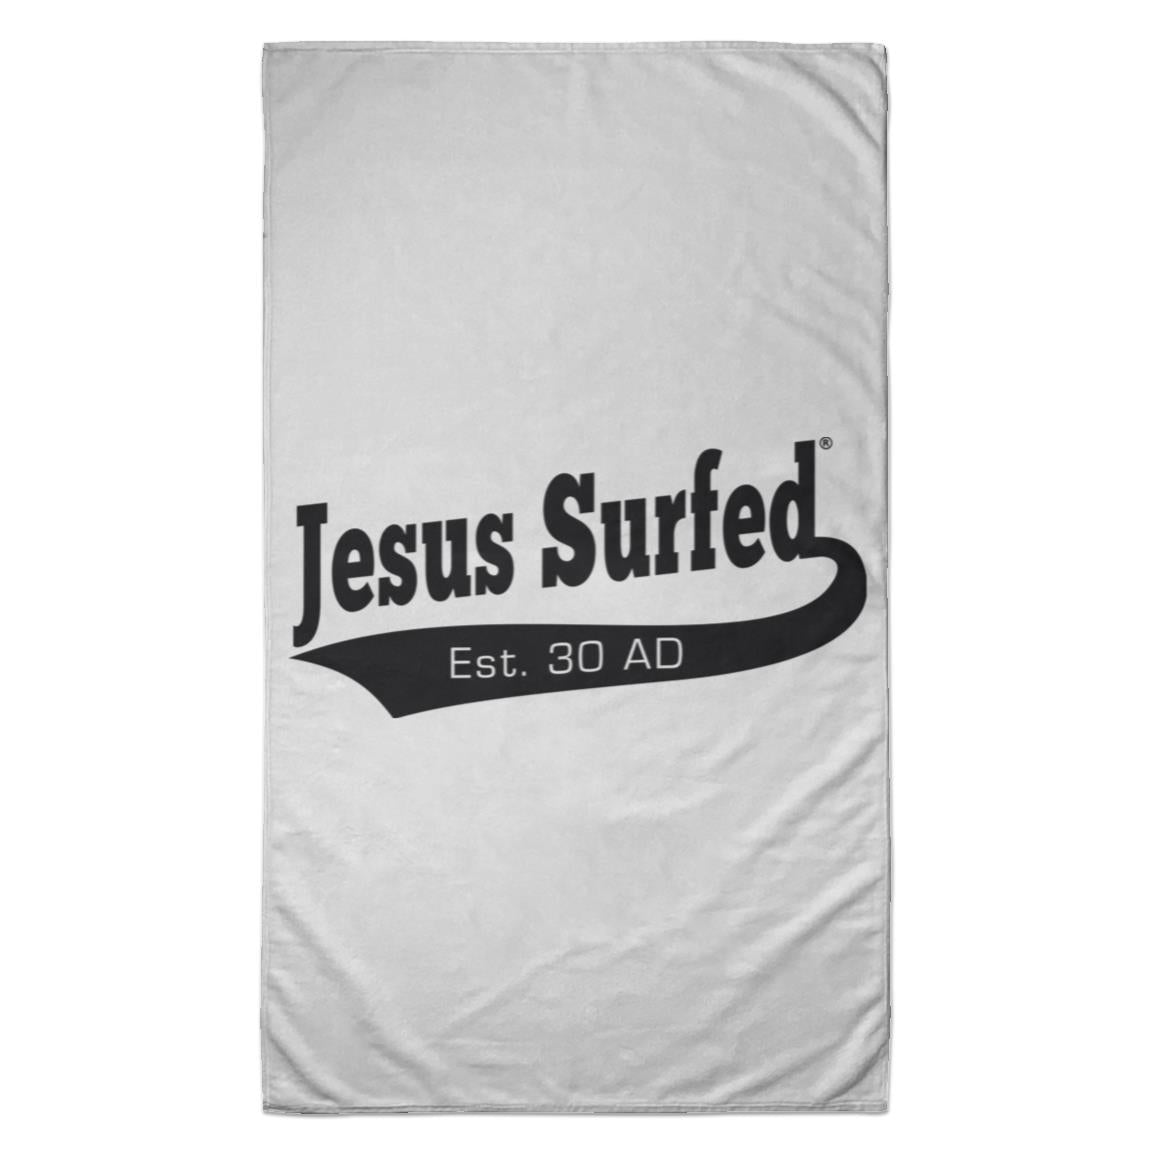 AD 30 Jesus Surfed Towel - 35x60